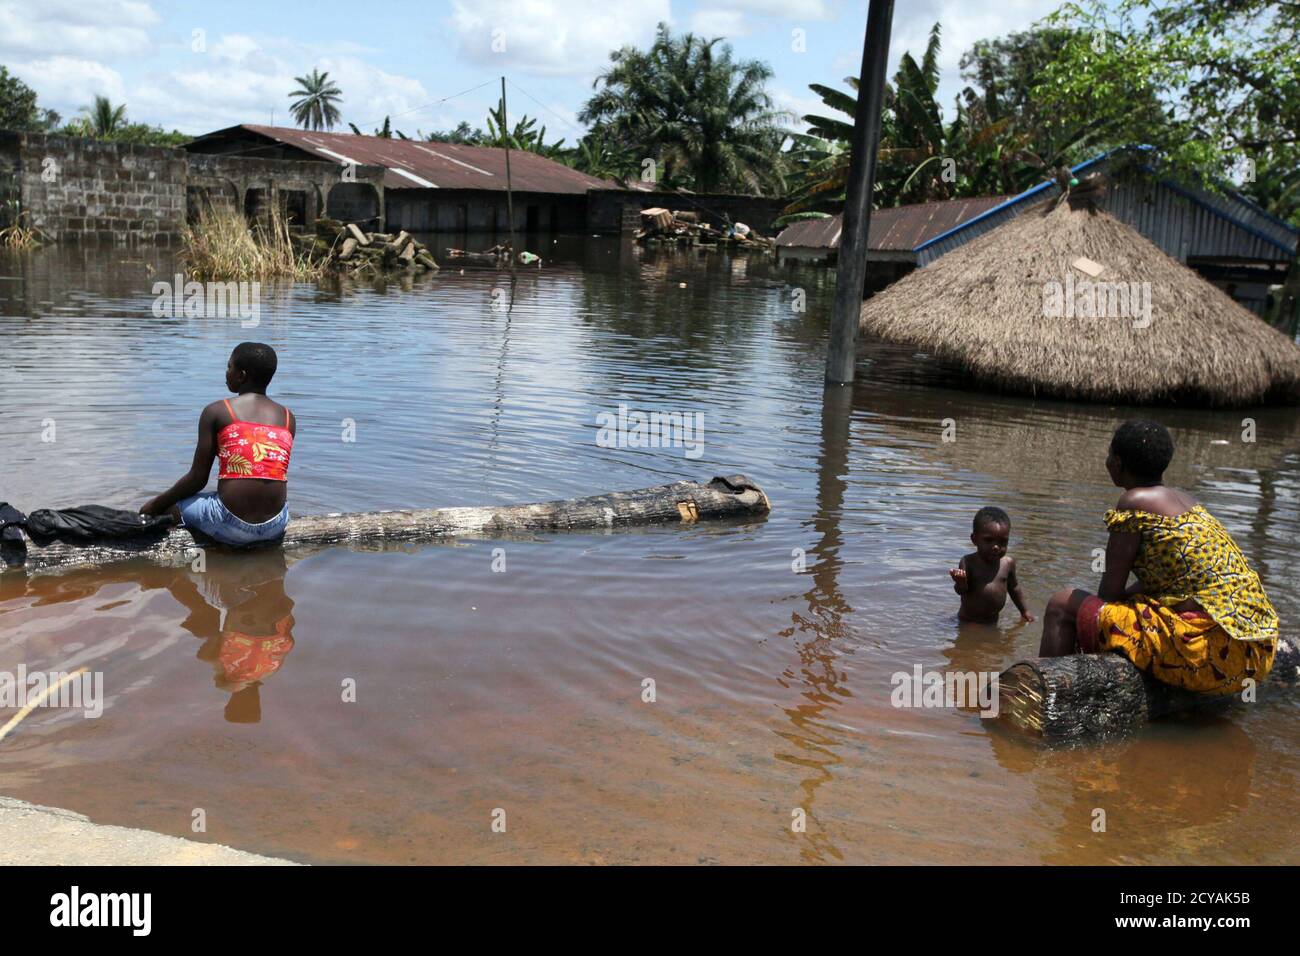 Les gens sont assis devant un bâtiment submergé dans la communauté de Patani dans l'État du delta du Nigeria le 15 octobre 2012. De vastes étendues de la nation la plus peuplée d'Afrique ont été submergées par les inondations au cours des dernières semaines, alors que les grands fleuves comme le Niger, le troisième plus long du continent, ont éclaté sur leurs rives. Au moins 140 personnes ont été tuées, des centaines de milliers déracinées et des dizaines de milliers d'hectares de terres agricoles ont été submergés depuis le début du mois de juillet, ce qui soulève des inquiétudes au sujet de la sécurité alimentaire, a déclaré l'Agence nationale de gestion des situations d'urgence (NEMA). REUTERS/Afolabi Sotunde (NIGERIA - Tags: DISASTER SOCI Banque D'Images